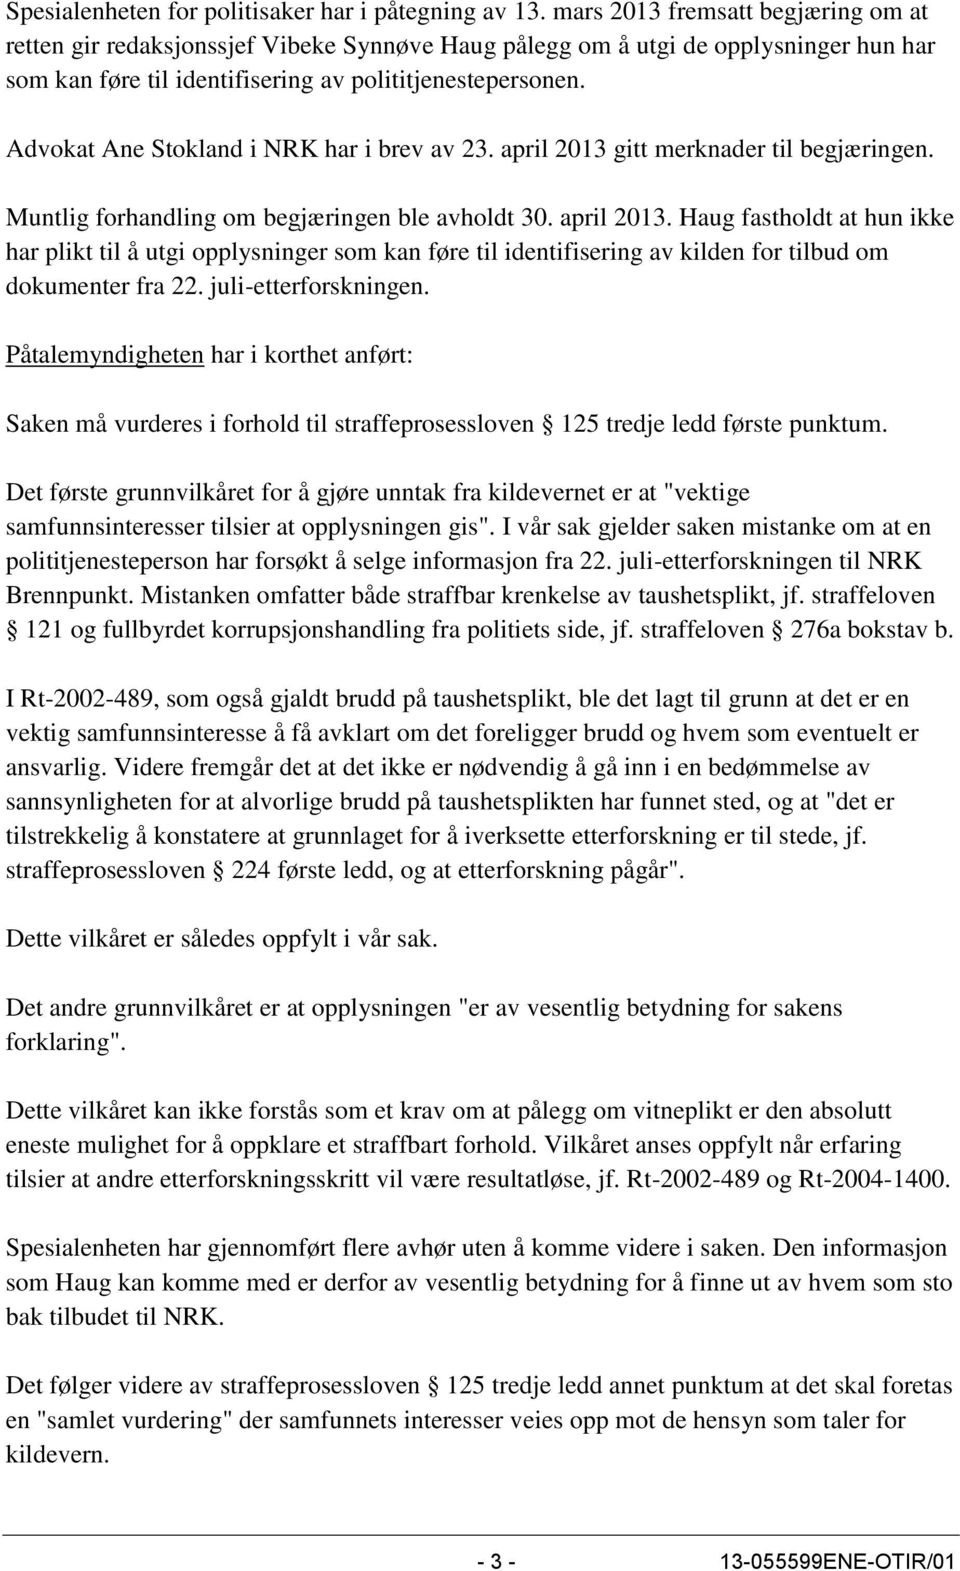 Advokat Ane Stokland i NRK har i brev av 23. april 2013 gitt merknader til begjæringen. Muntlig forhandling om begjæringen ble avholdt 30. april 2013. Haug fastholdt at hun ikke har plikt til å utgi opplysninger som kan føre til identifisering av kilden for tilbud om dokumenter fra 22.